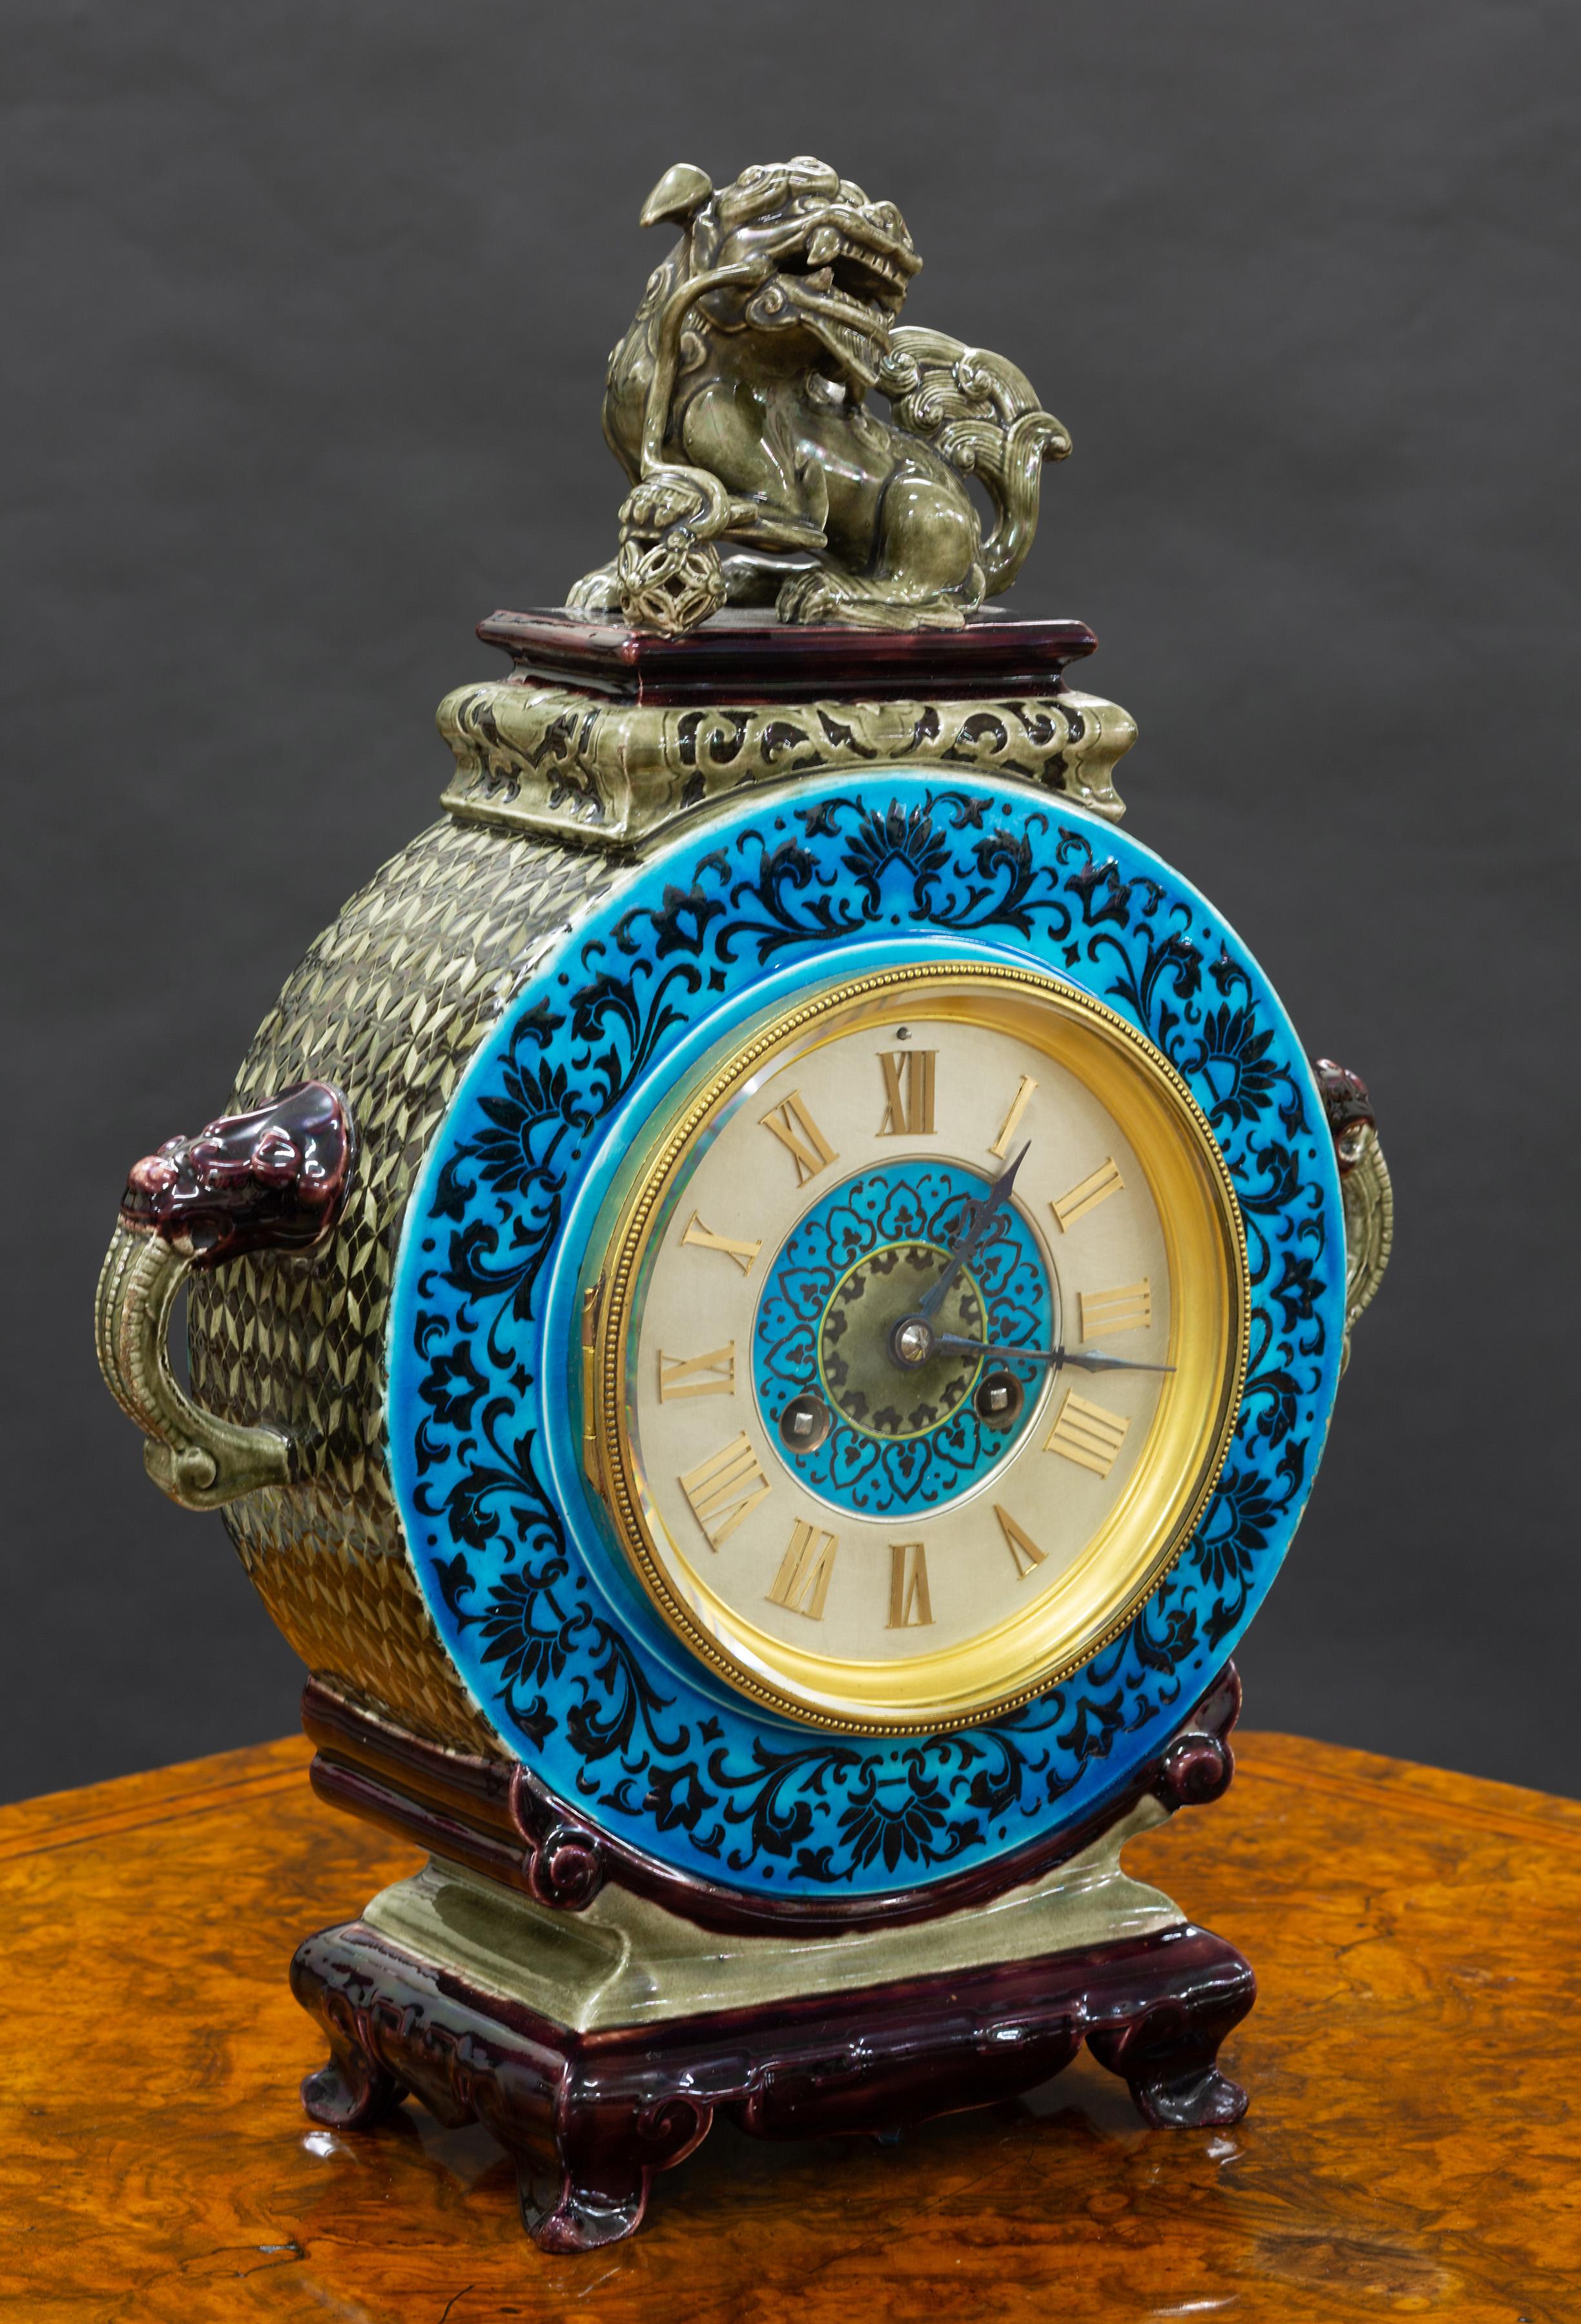 Französische Keramikuhr mit chinesischem Dekor, auf ausladenden Füßen stehend, mit violettem und türkisfarbenem Glasurdekor und Löwenkopf-